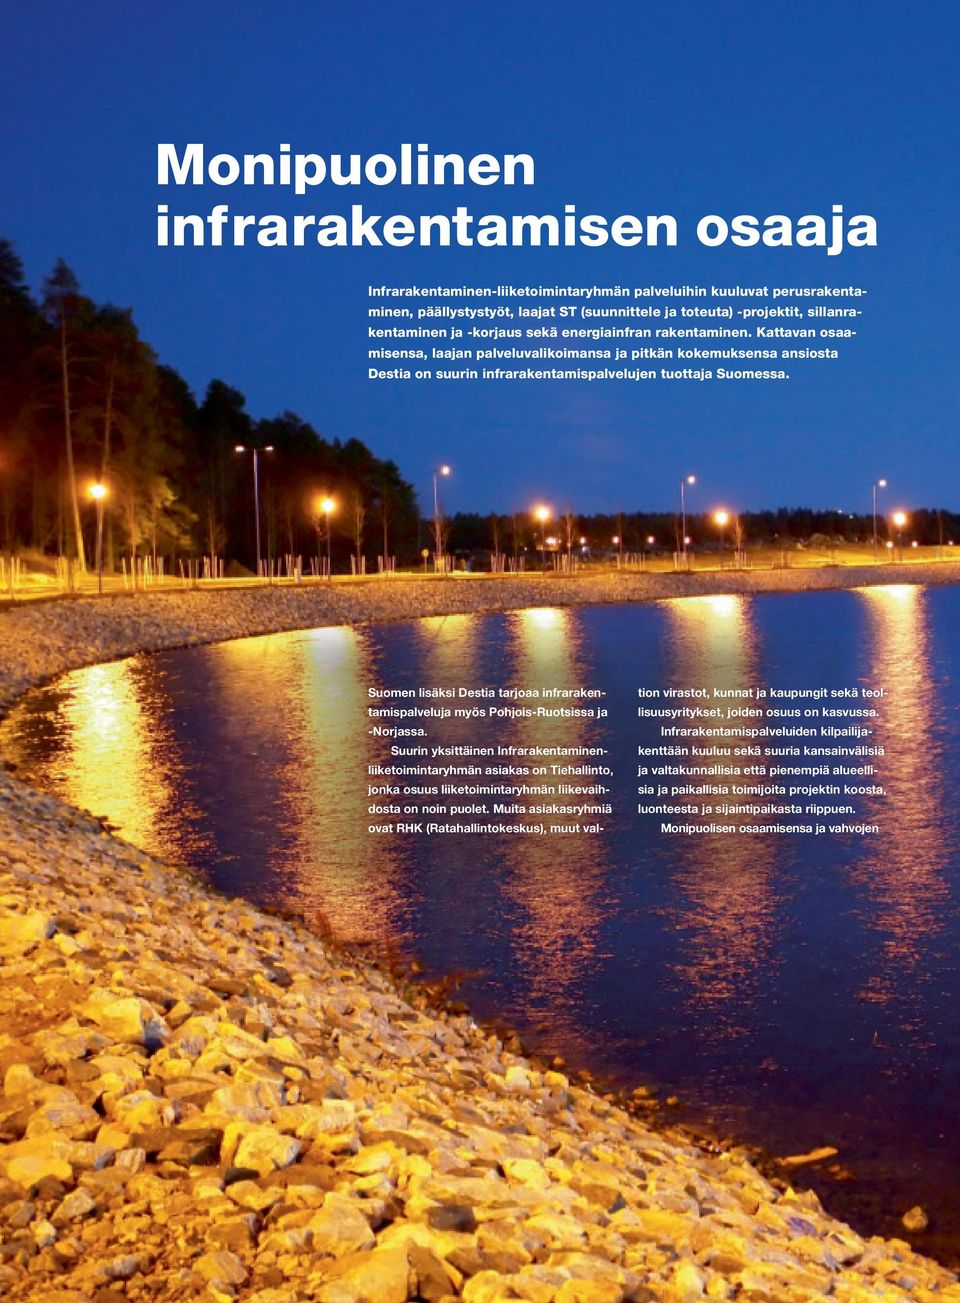 Suomen lisäksi Destia tarjoaa infrarakentamispalveluja myös Pohjois-Ruotsissa ja -Norjassa.